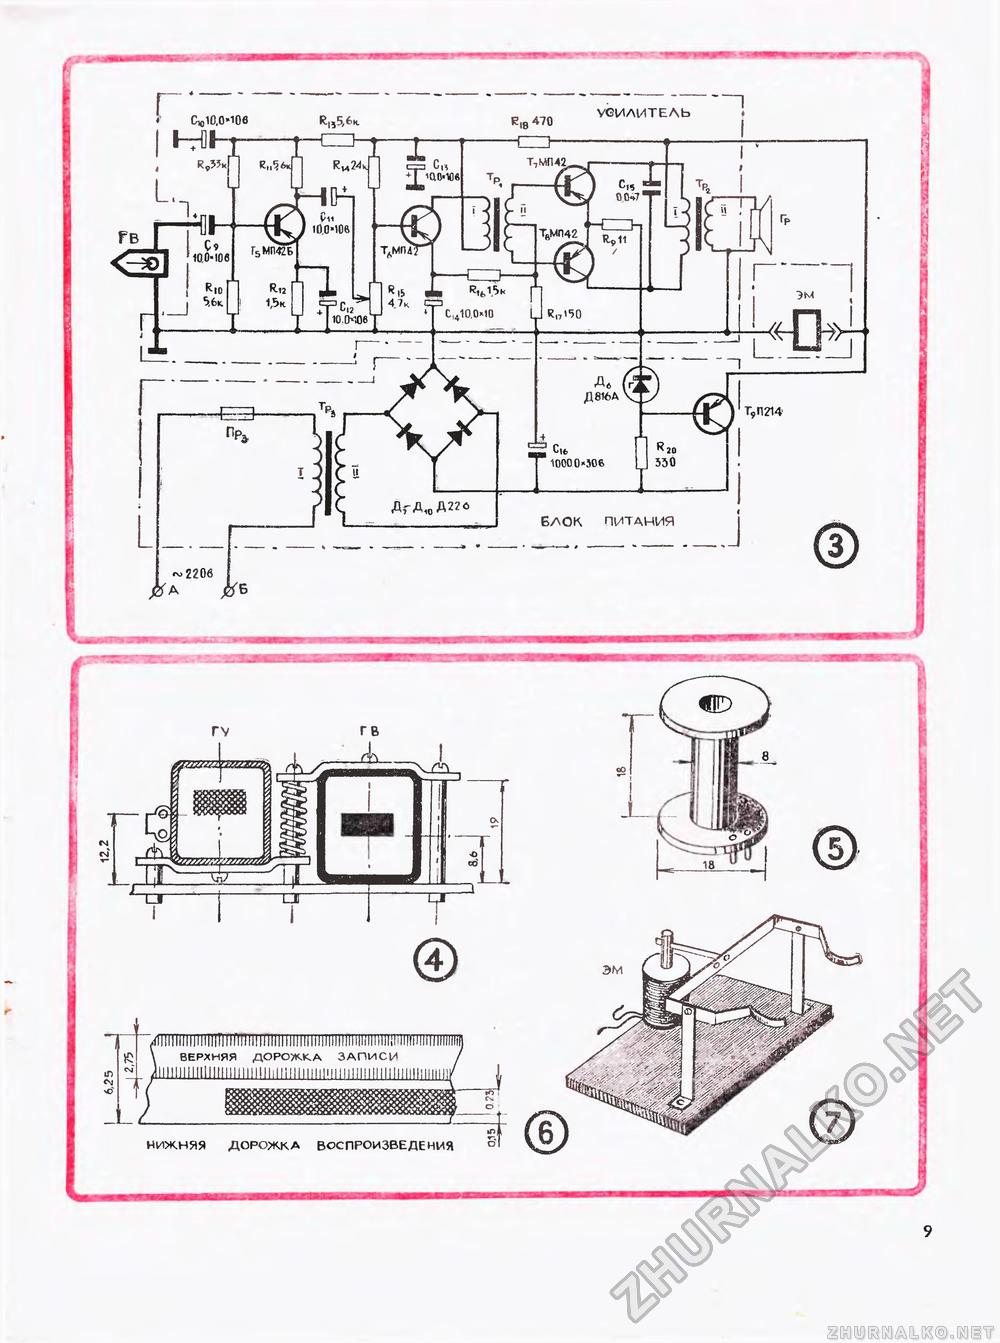 Юный техник - для умелых рук 1973-02, страница 9